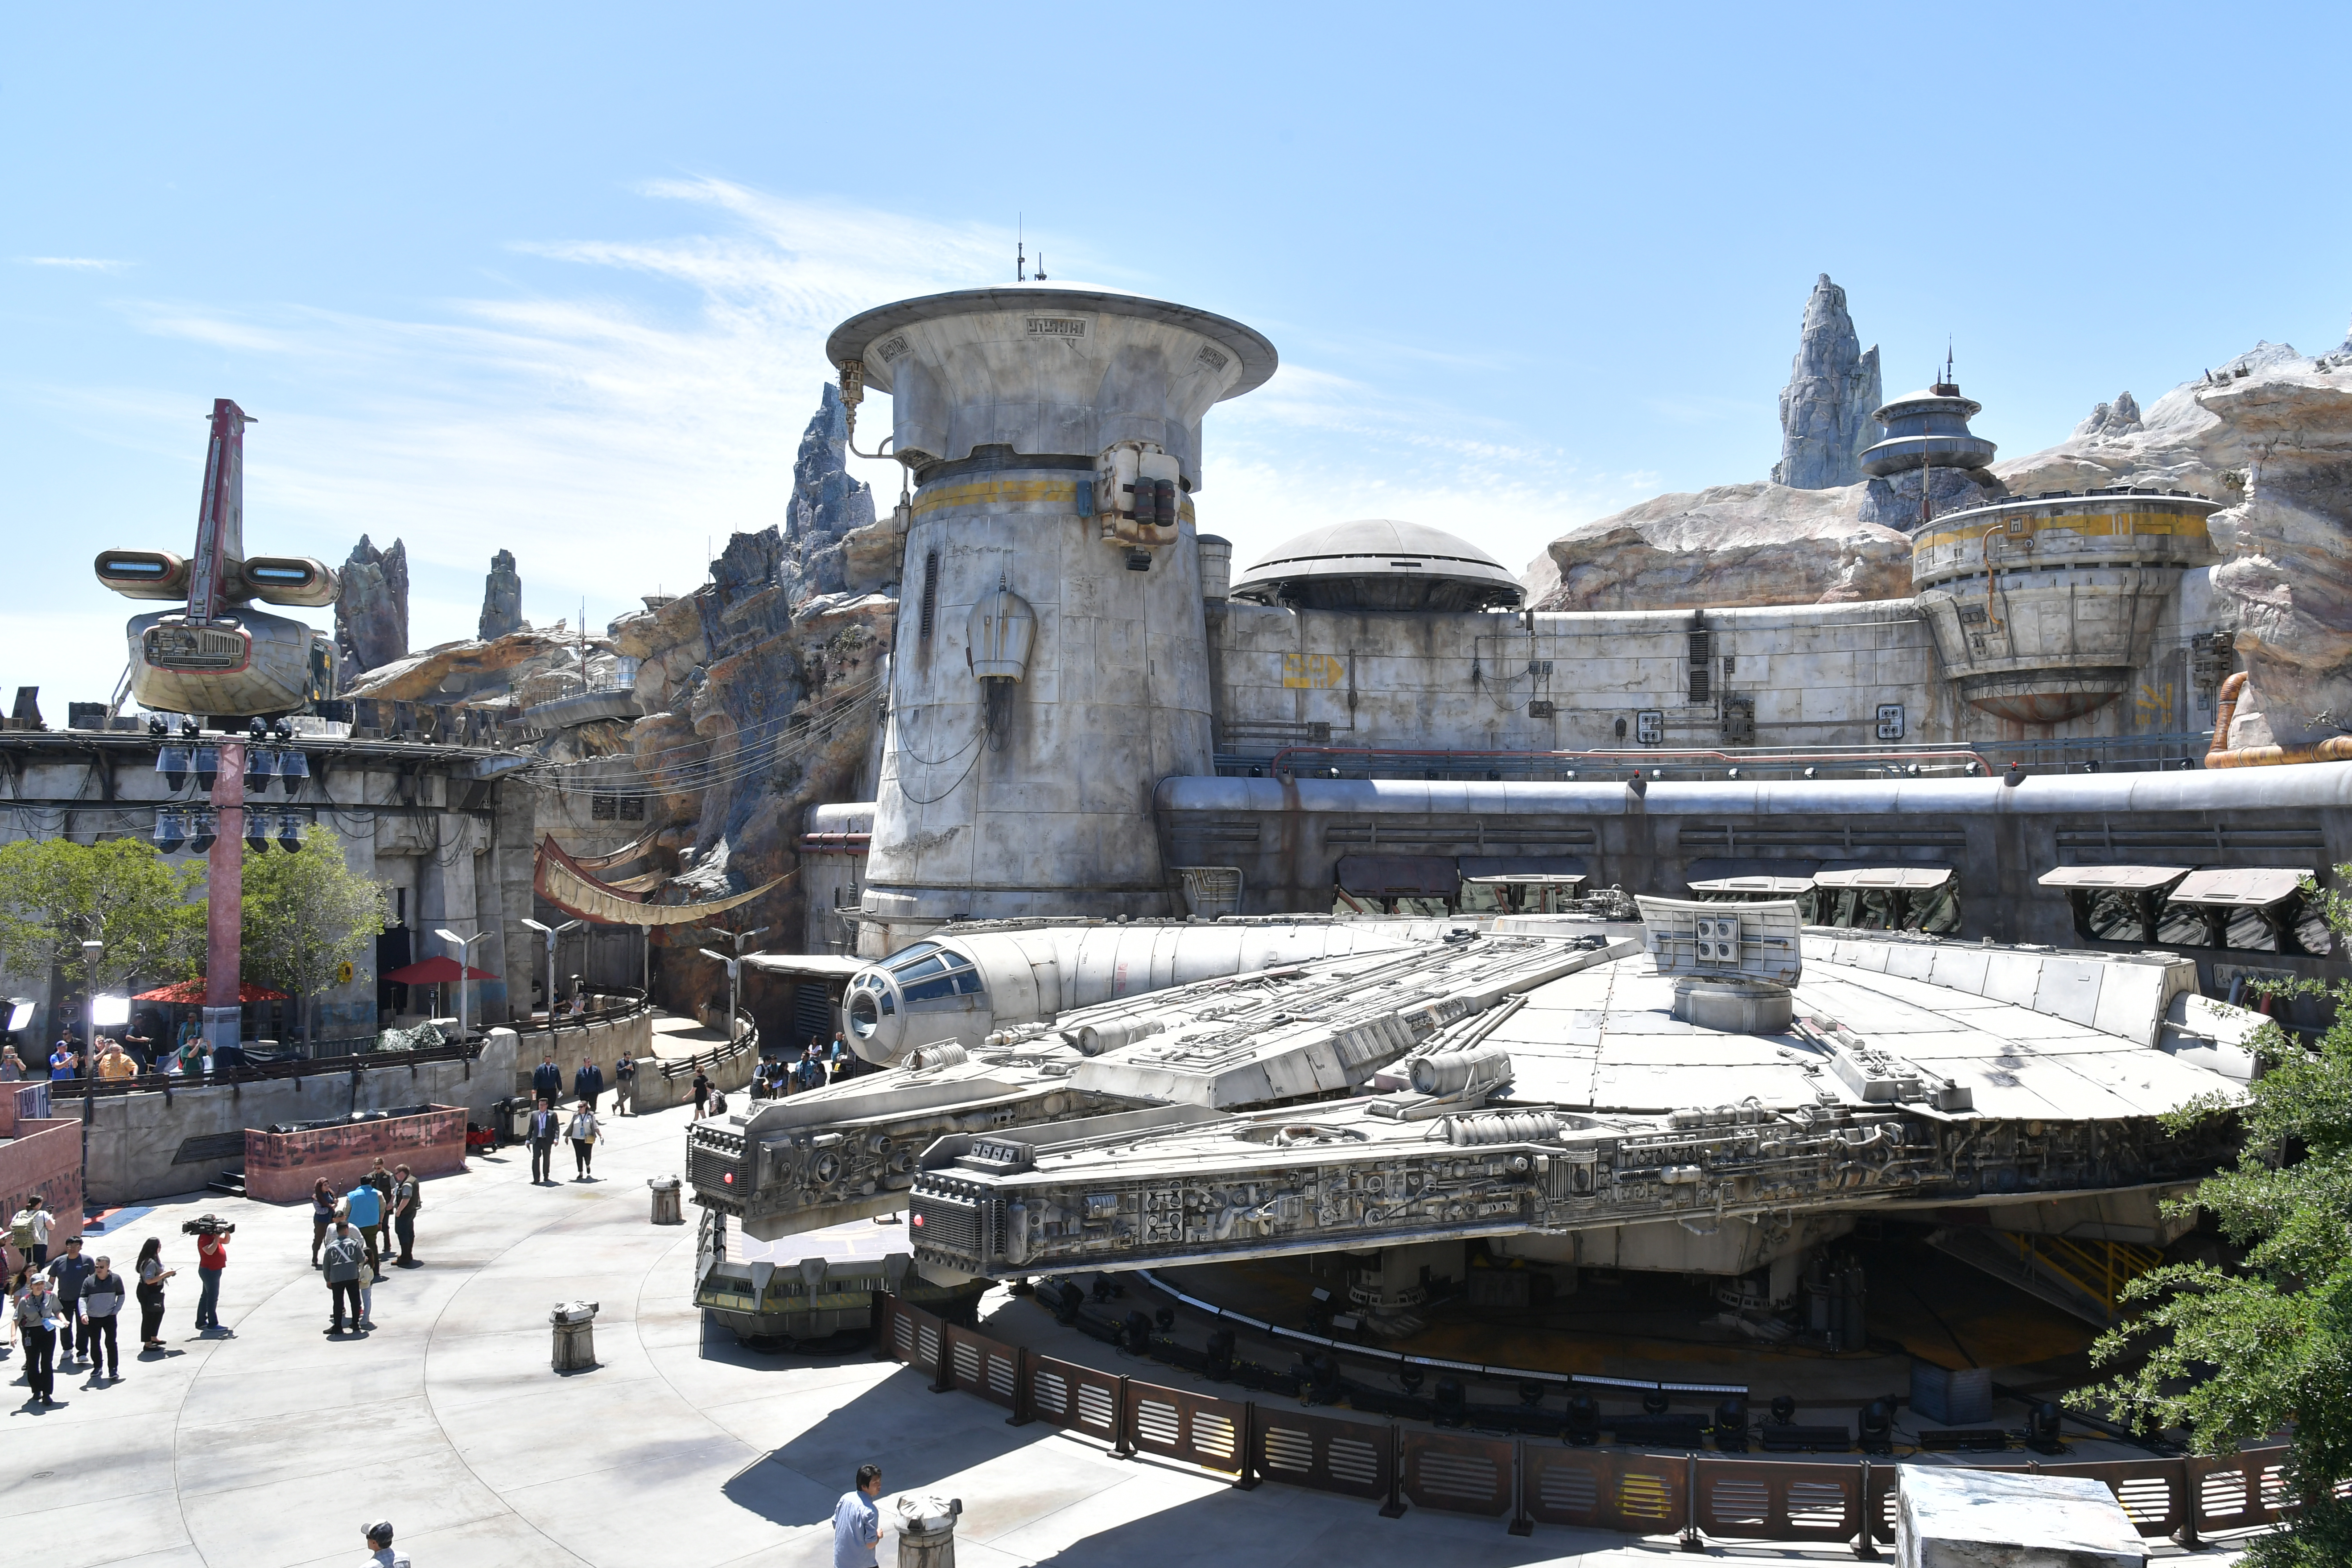 Disney’s Star Wars Hotel Will Open In 2021